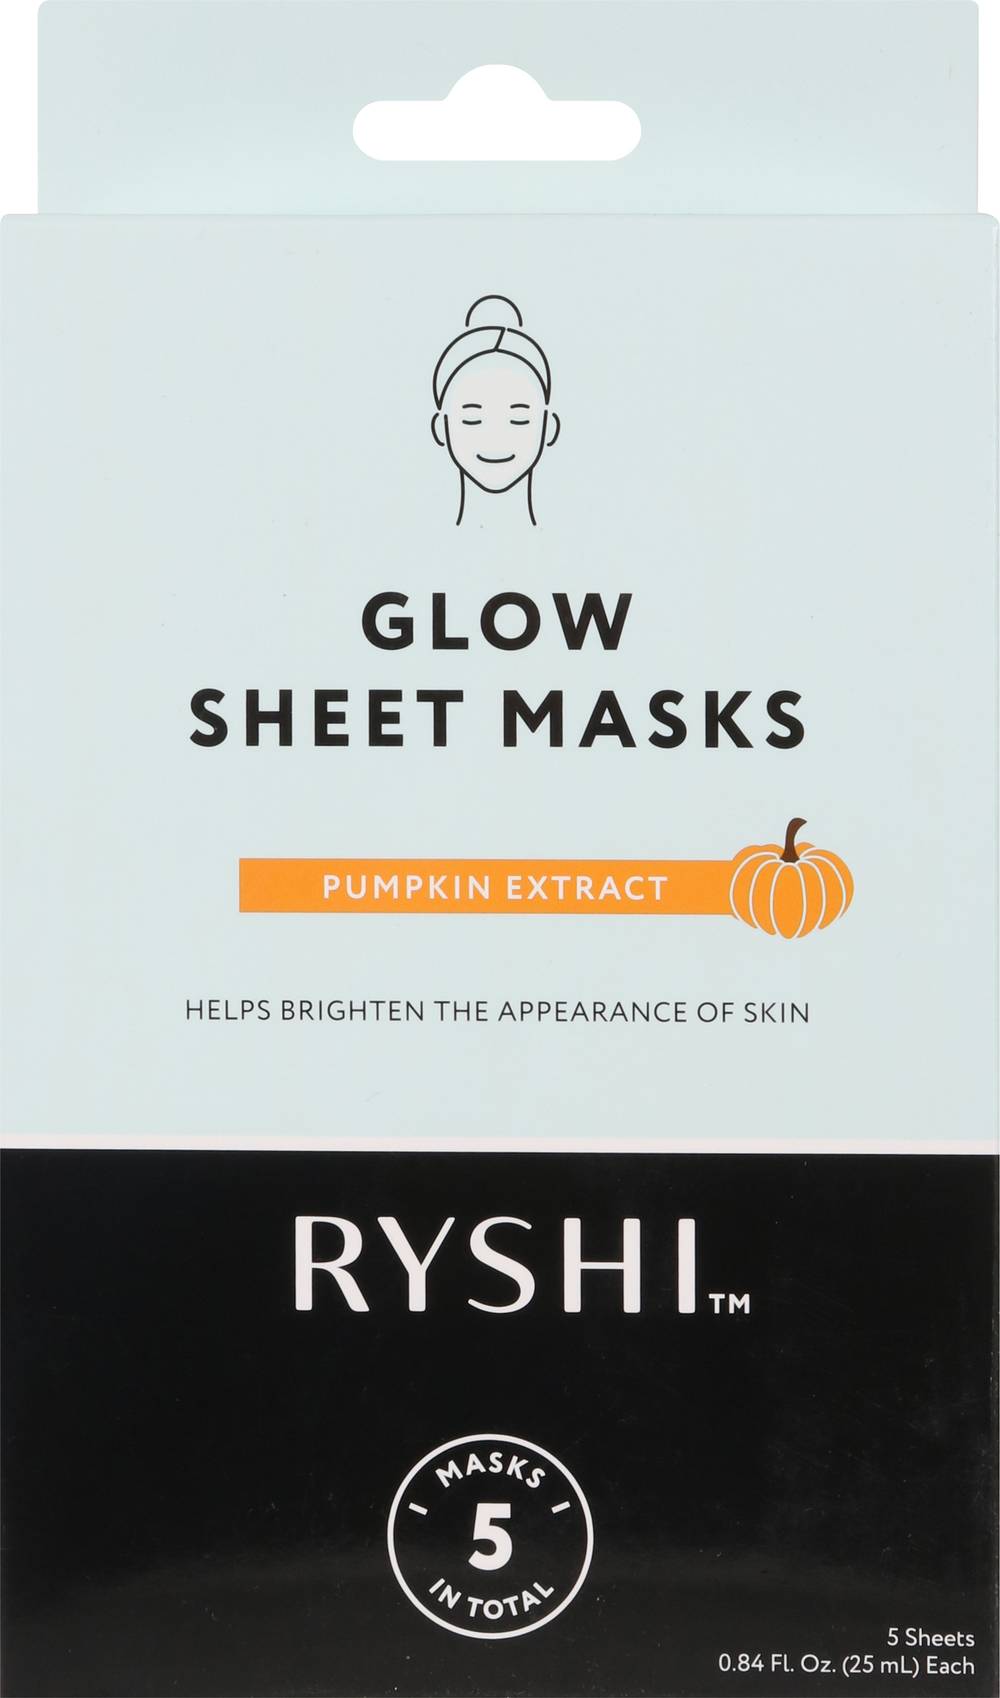 Ryshi Sheet Masks - Pumpkin